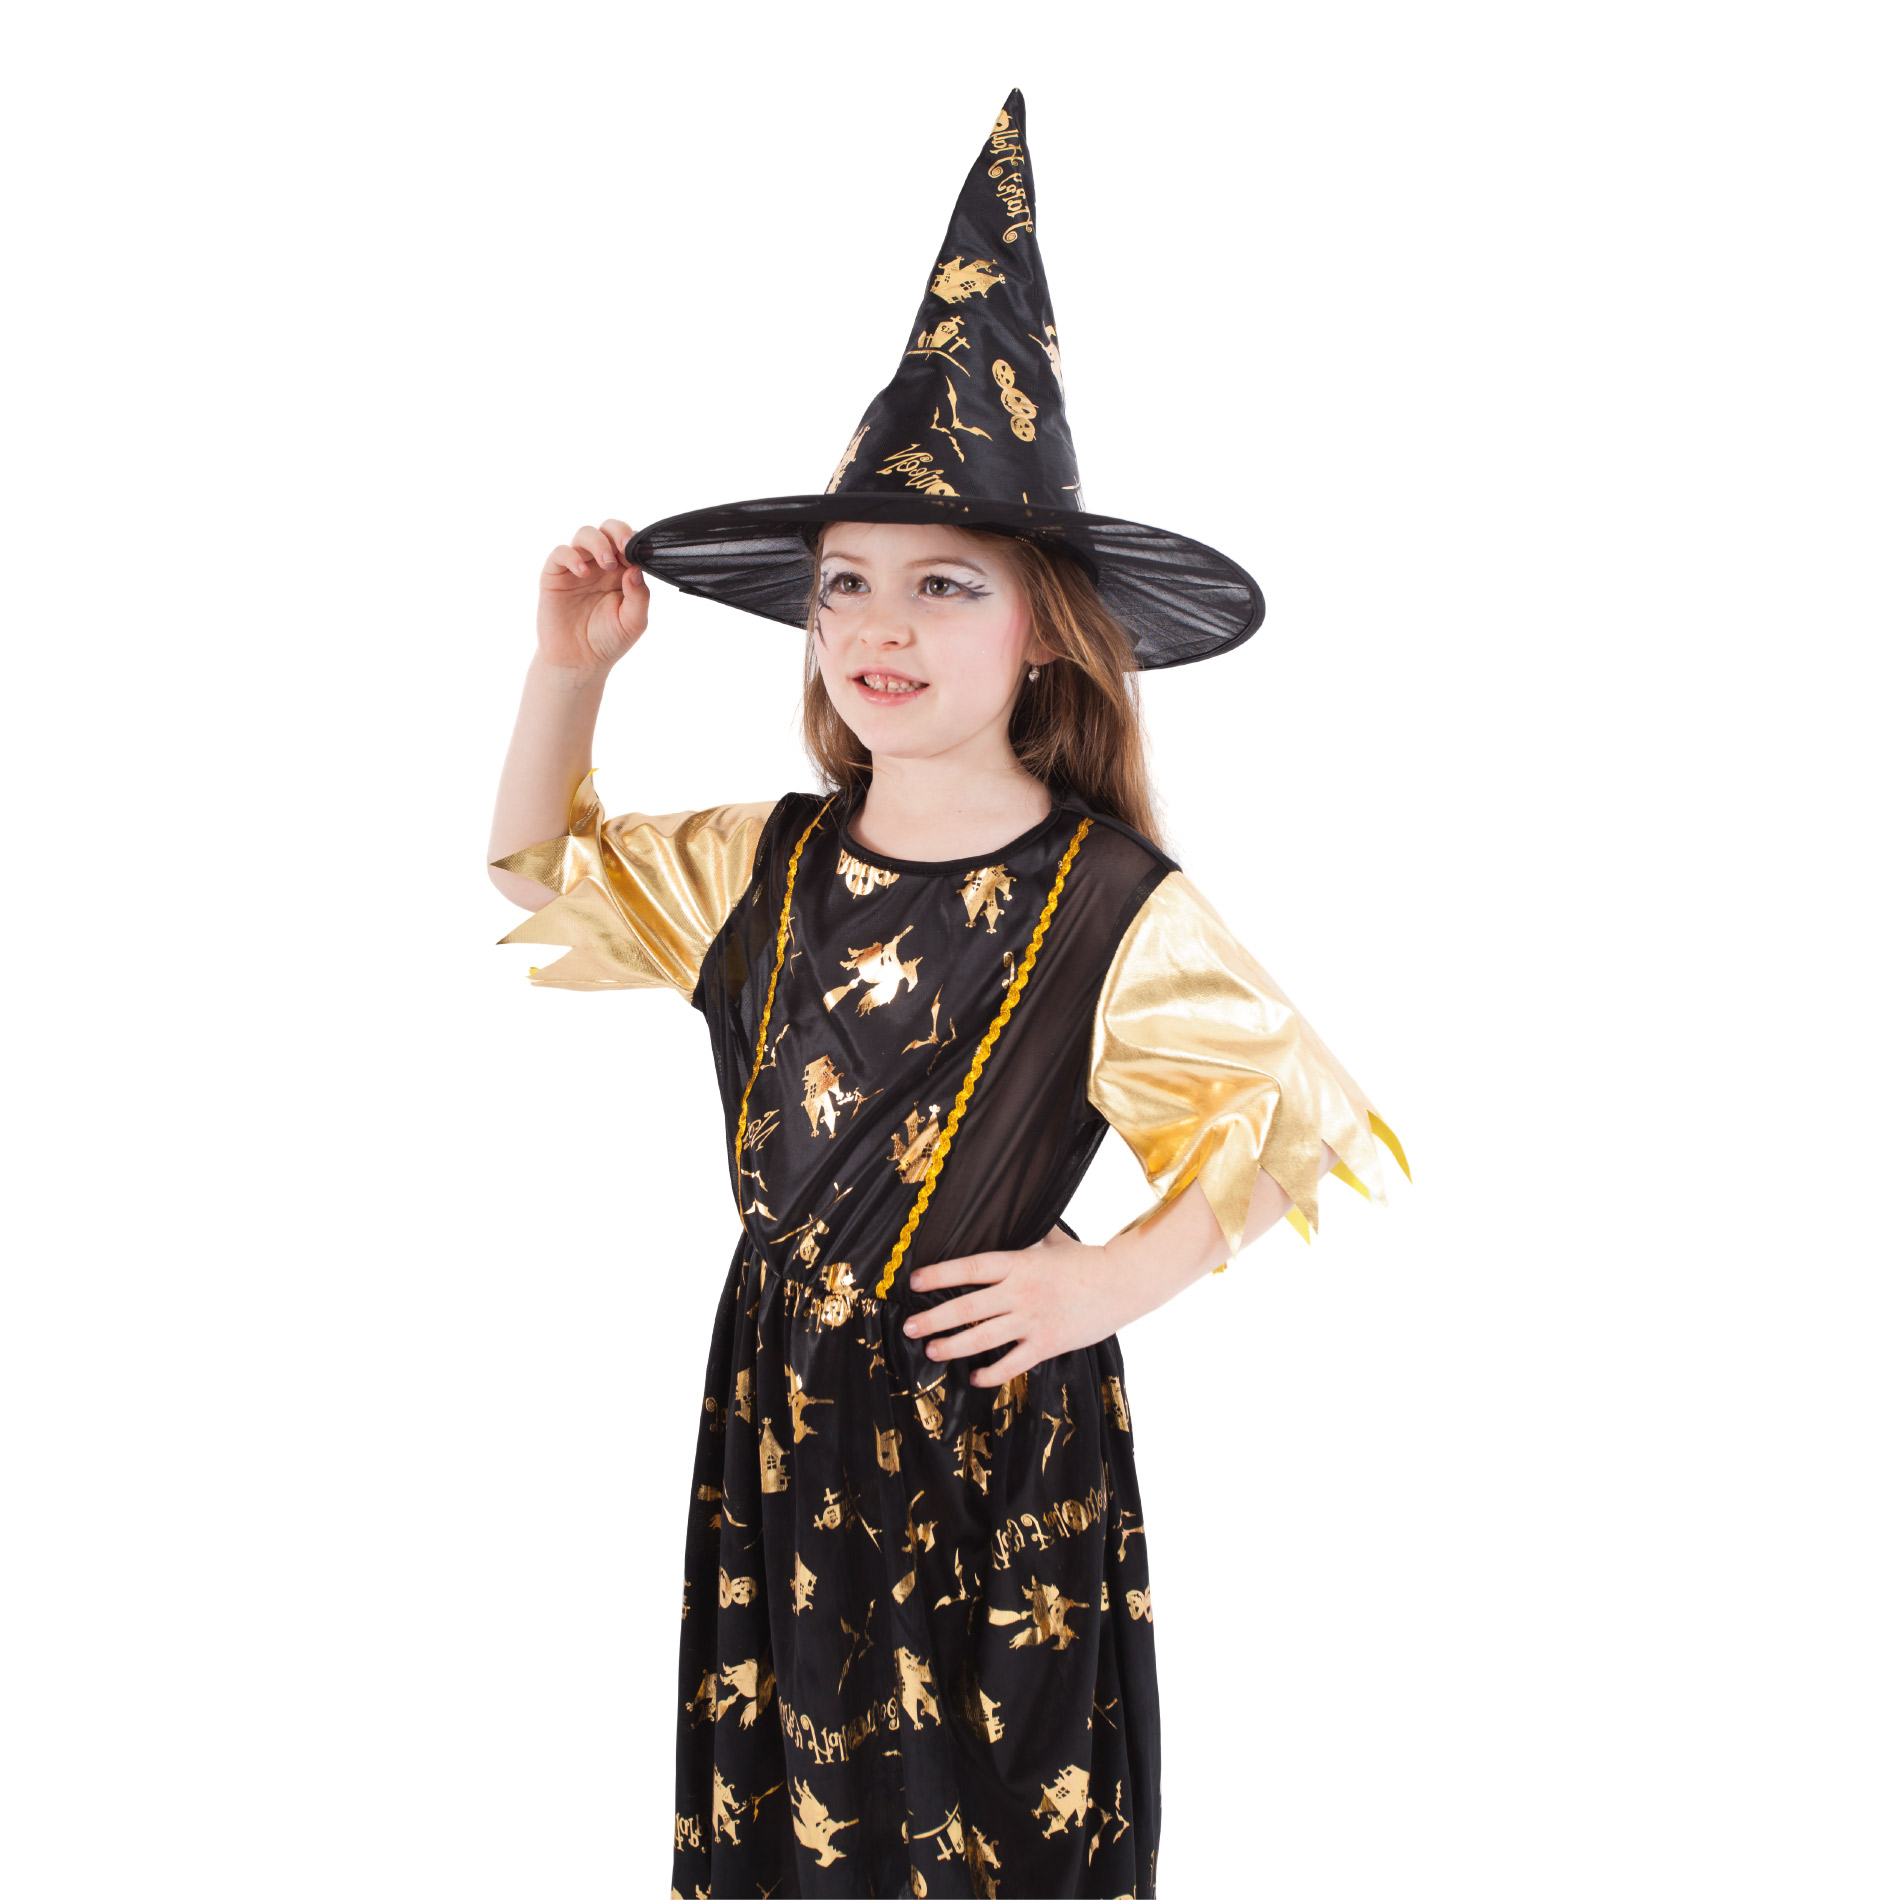 Dětský kostým čarodějnice černo-zlatá (M)